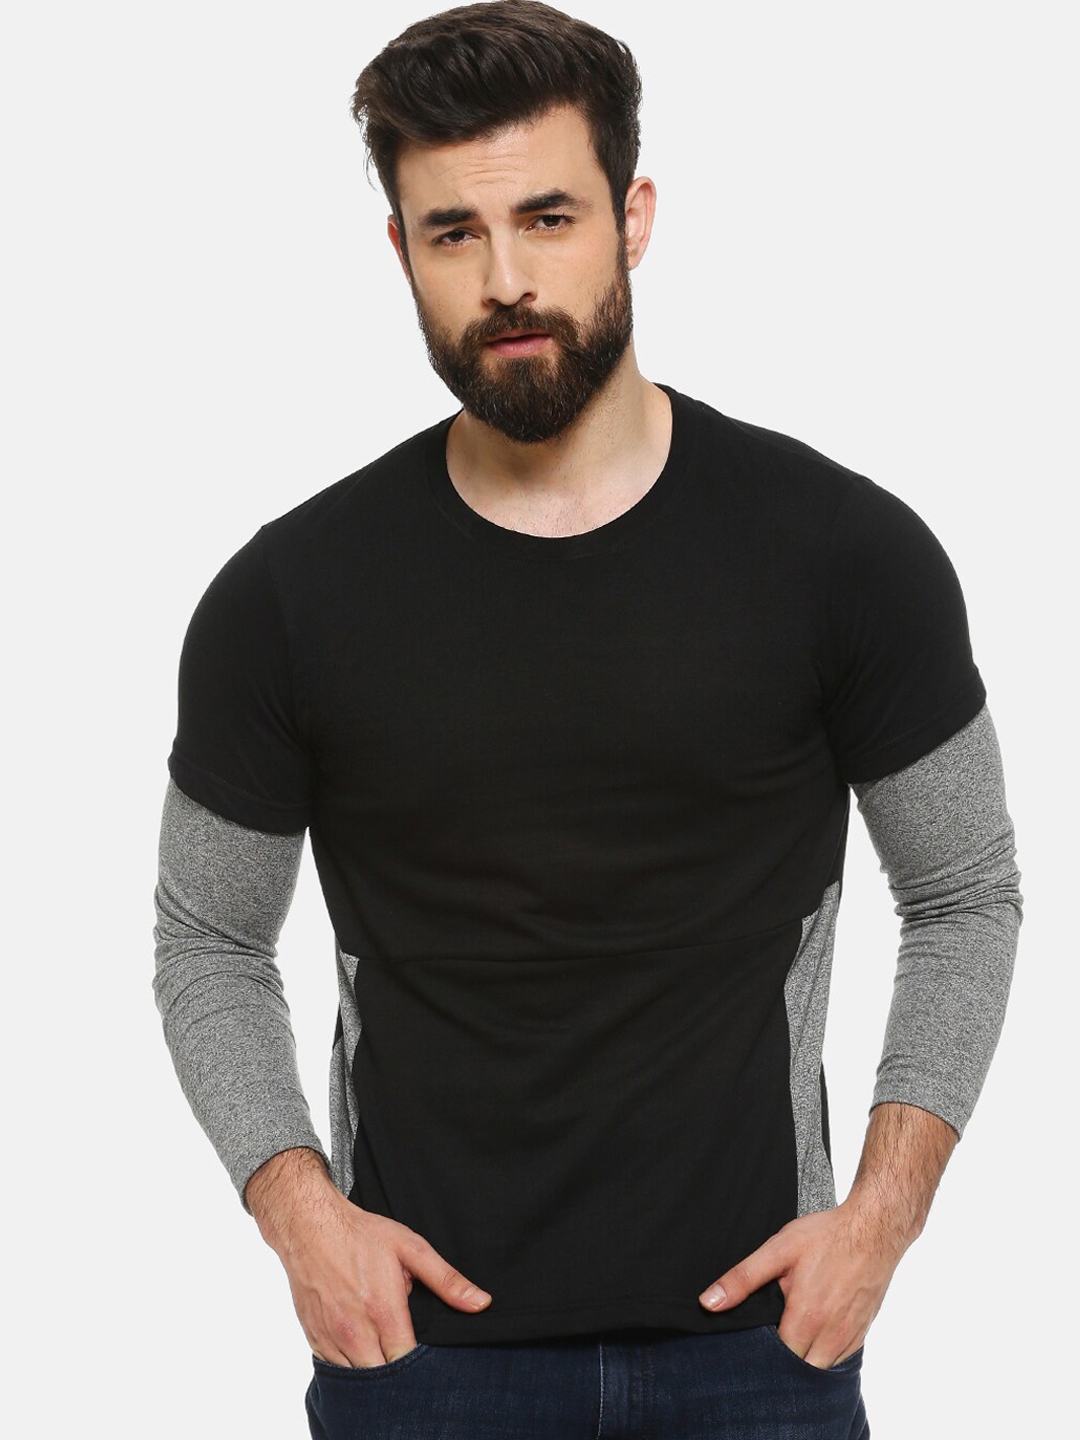 Campus Sutra Men Black   Grey Solid Round Neck T shirt